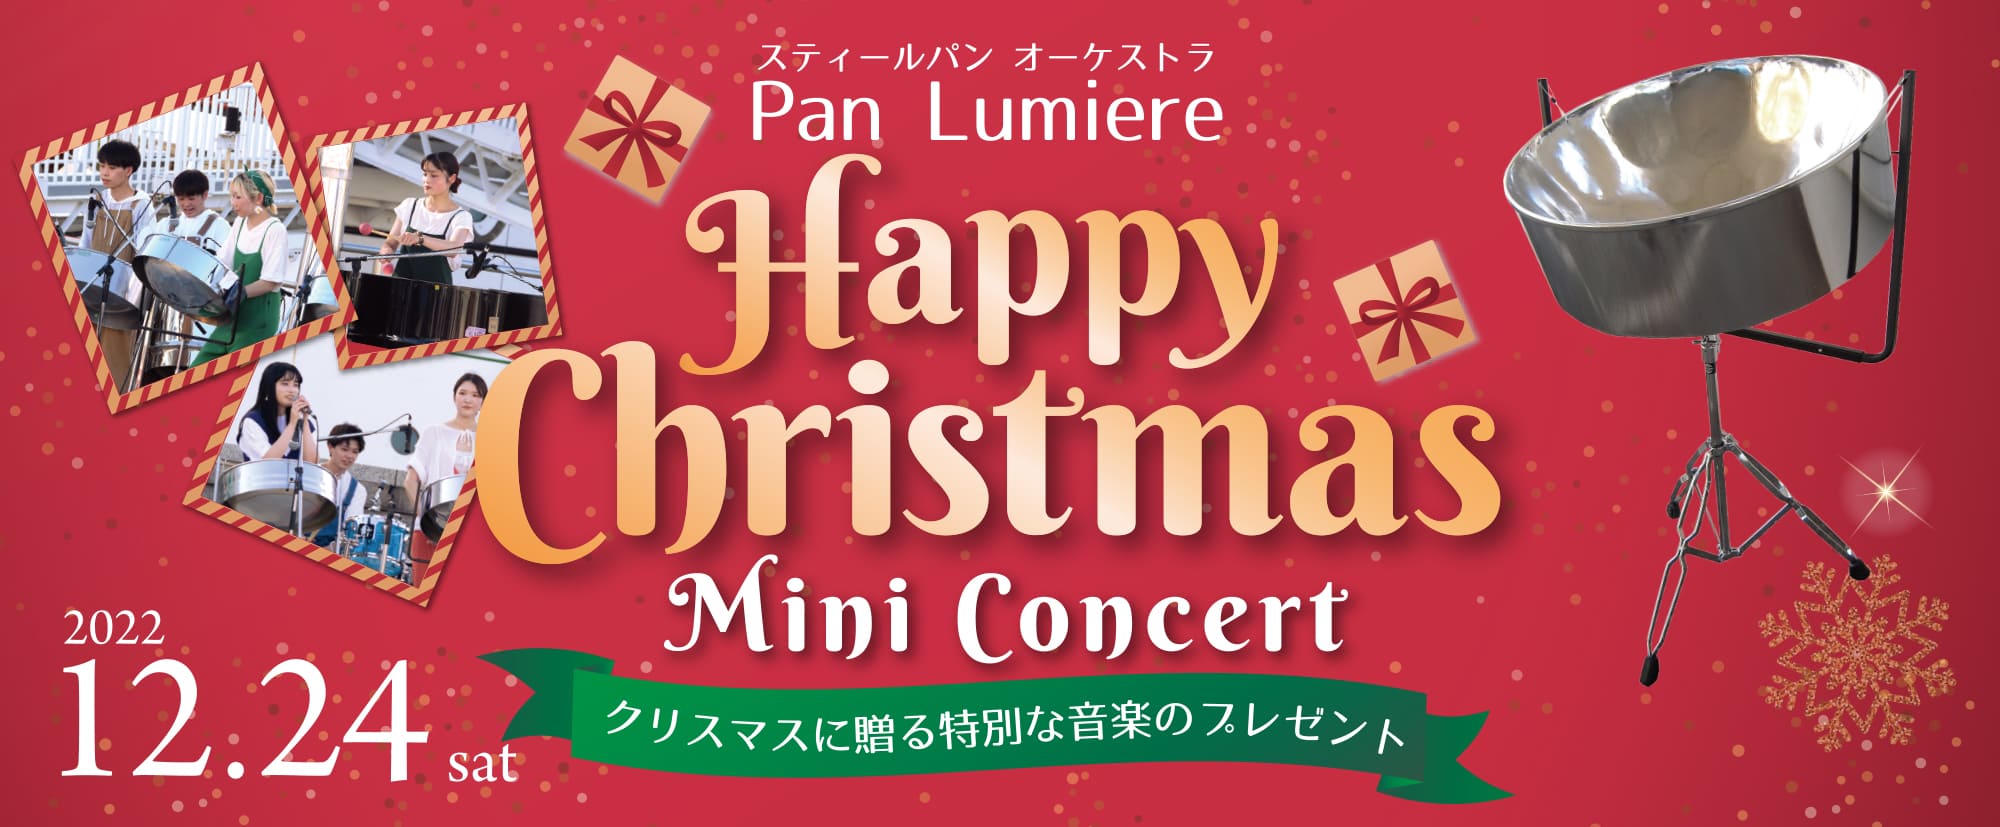 スティールパン オーケストラ『Pan Lumiere』Happy Christmas Mini Concert